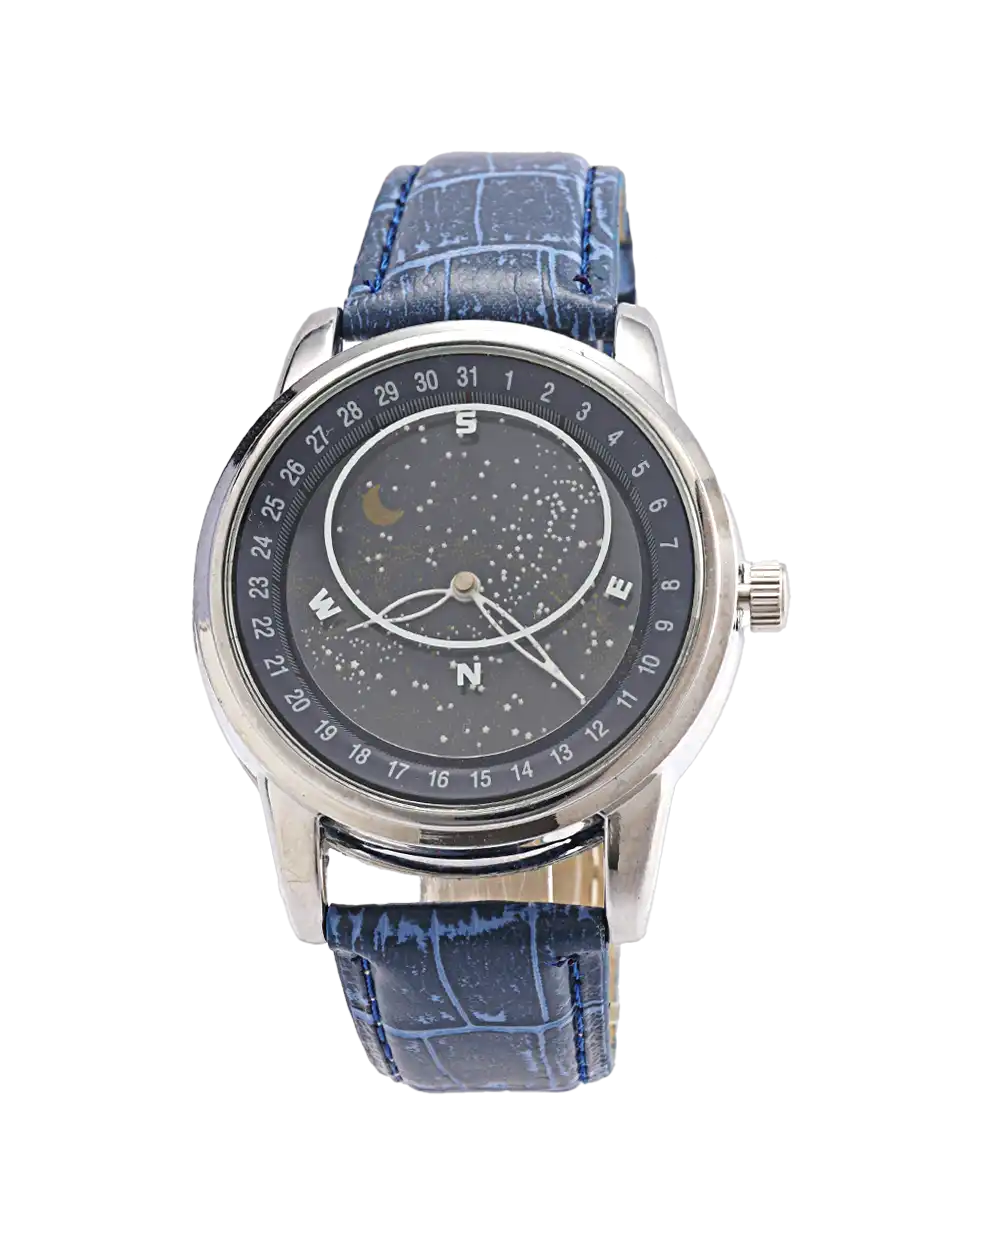 خرید ساعت مچی مردانه گلکسی GALAXY طرح کهکشانی مدل 1801 بند آبی و صفحه ی چرخان با بهترین قیمت به همراه جعبه ی ساعت و ارسال رایگان به سراسر ایران